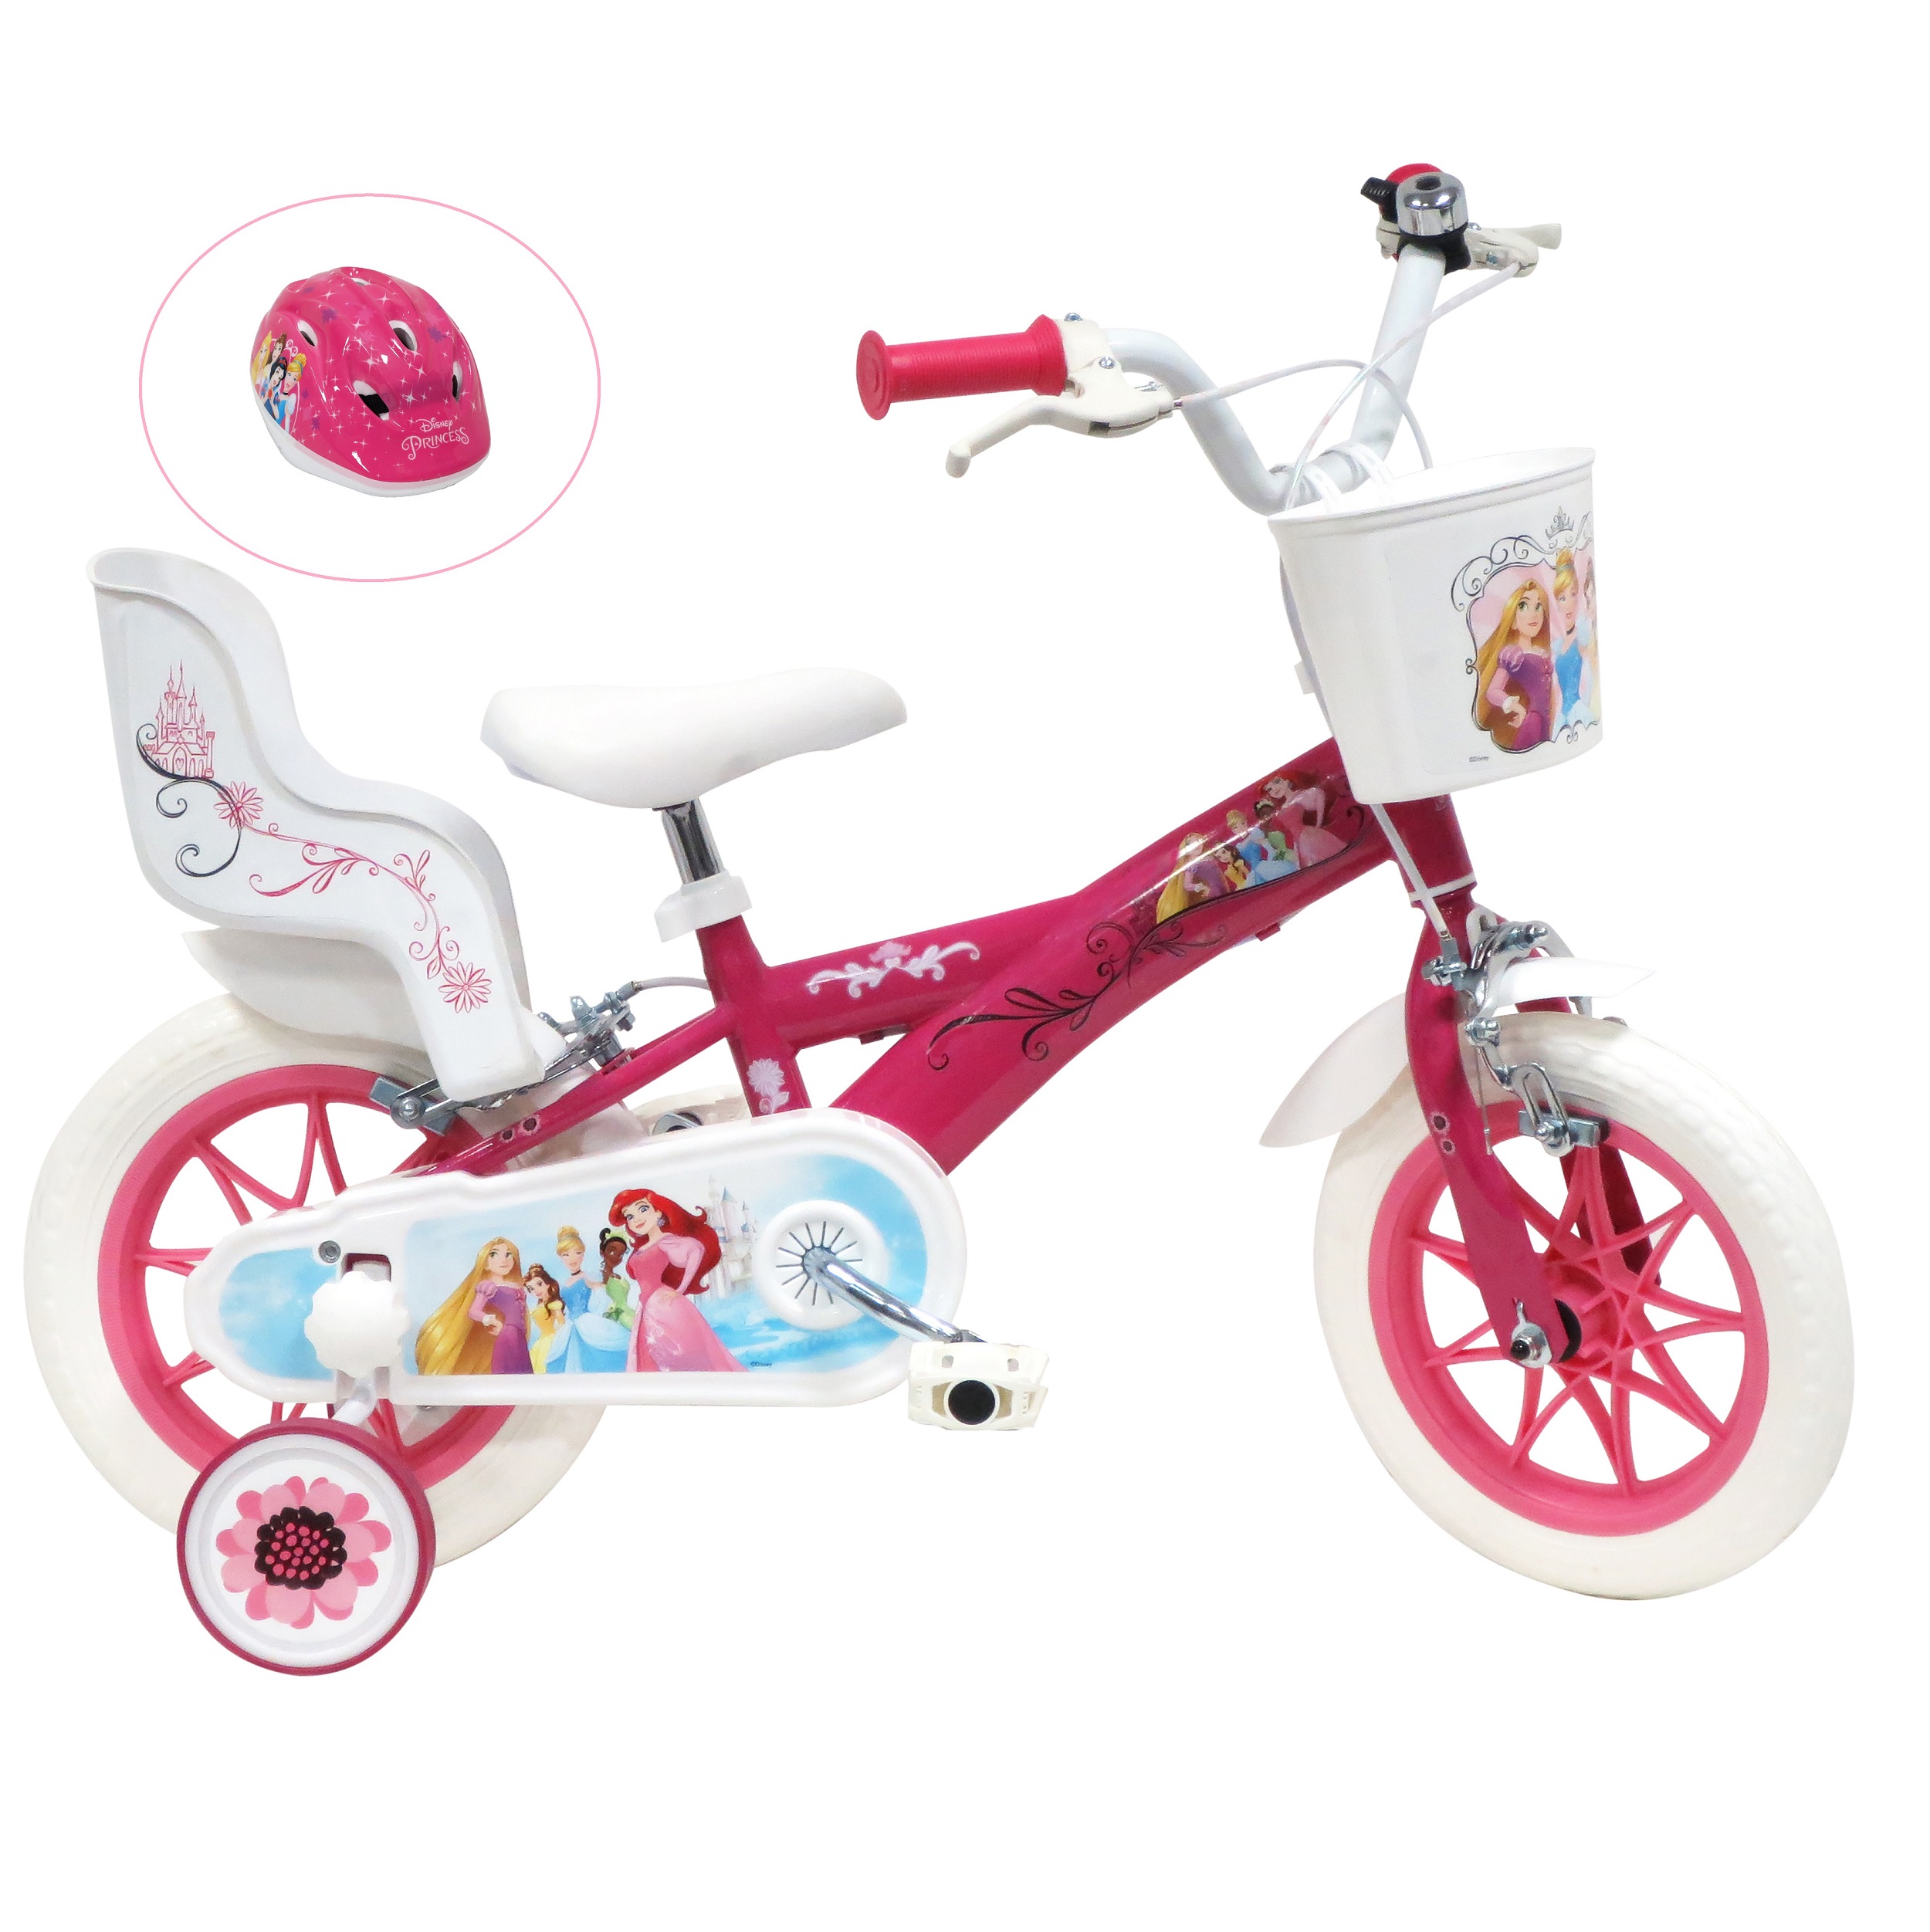 Nickelodeon Vélo 12 Garçon Licence Pat Patrouille + Casque pour enfant de 2  à 4 ans avec stabilisateurs à molettes - 1 frein pas cher 